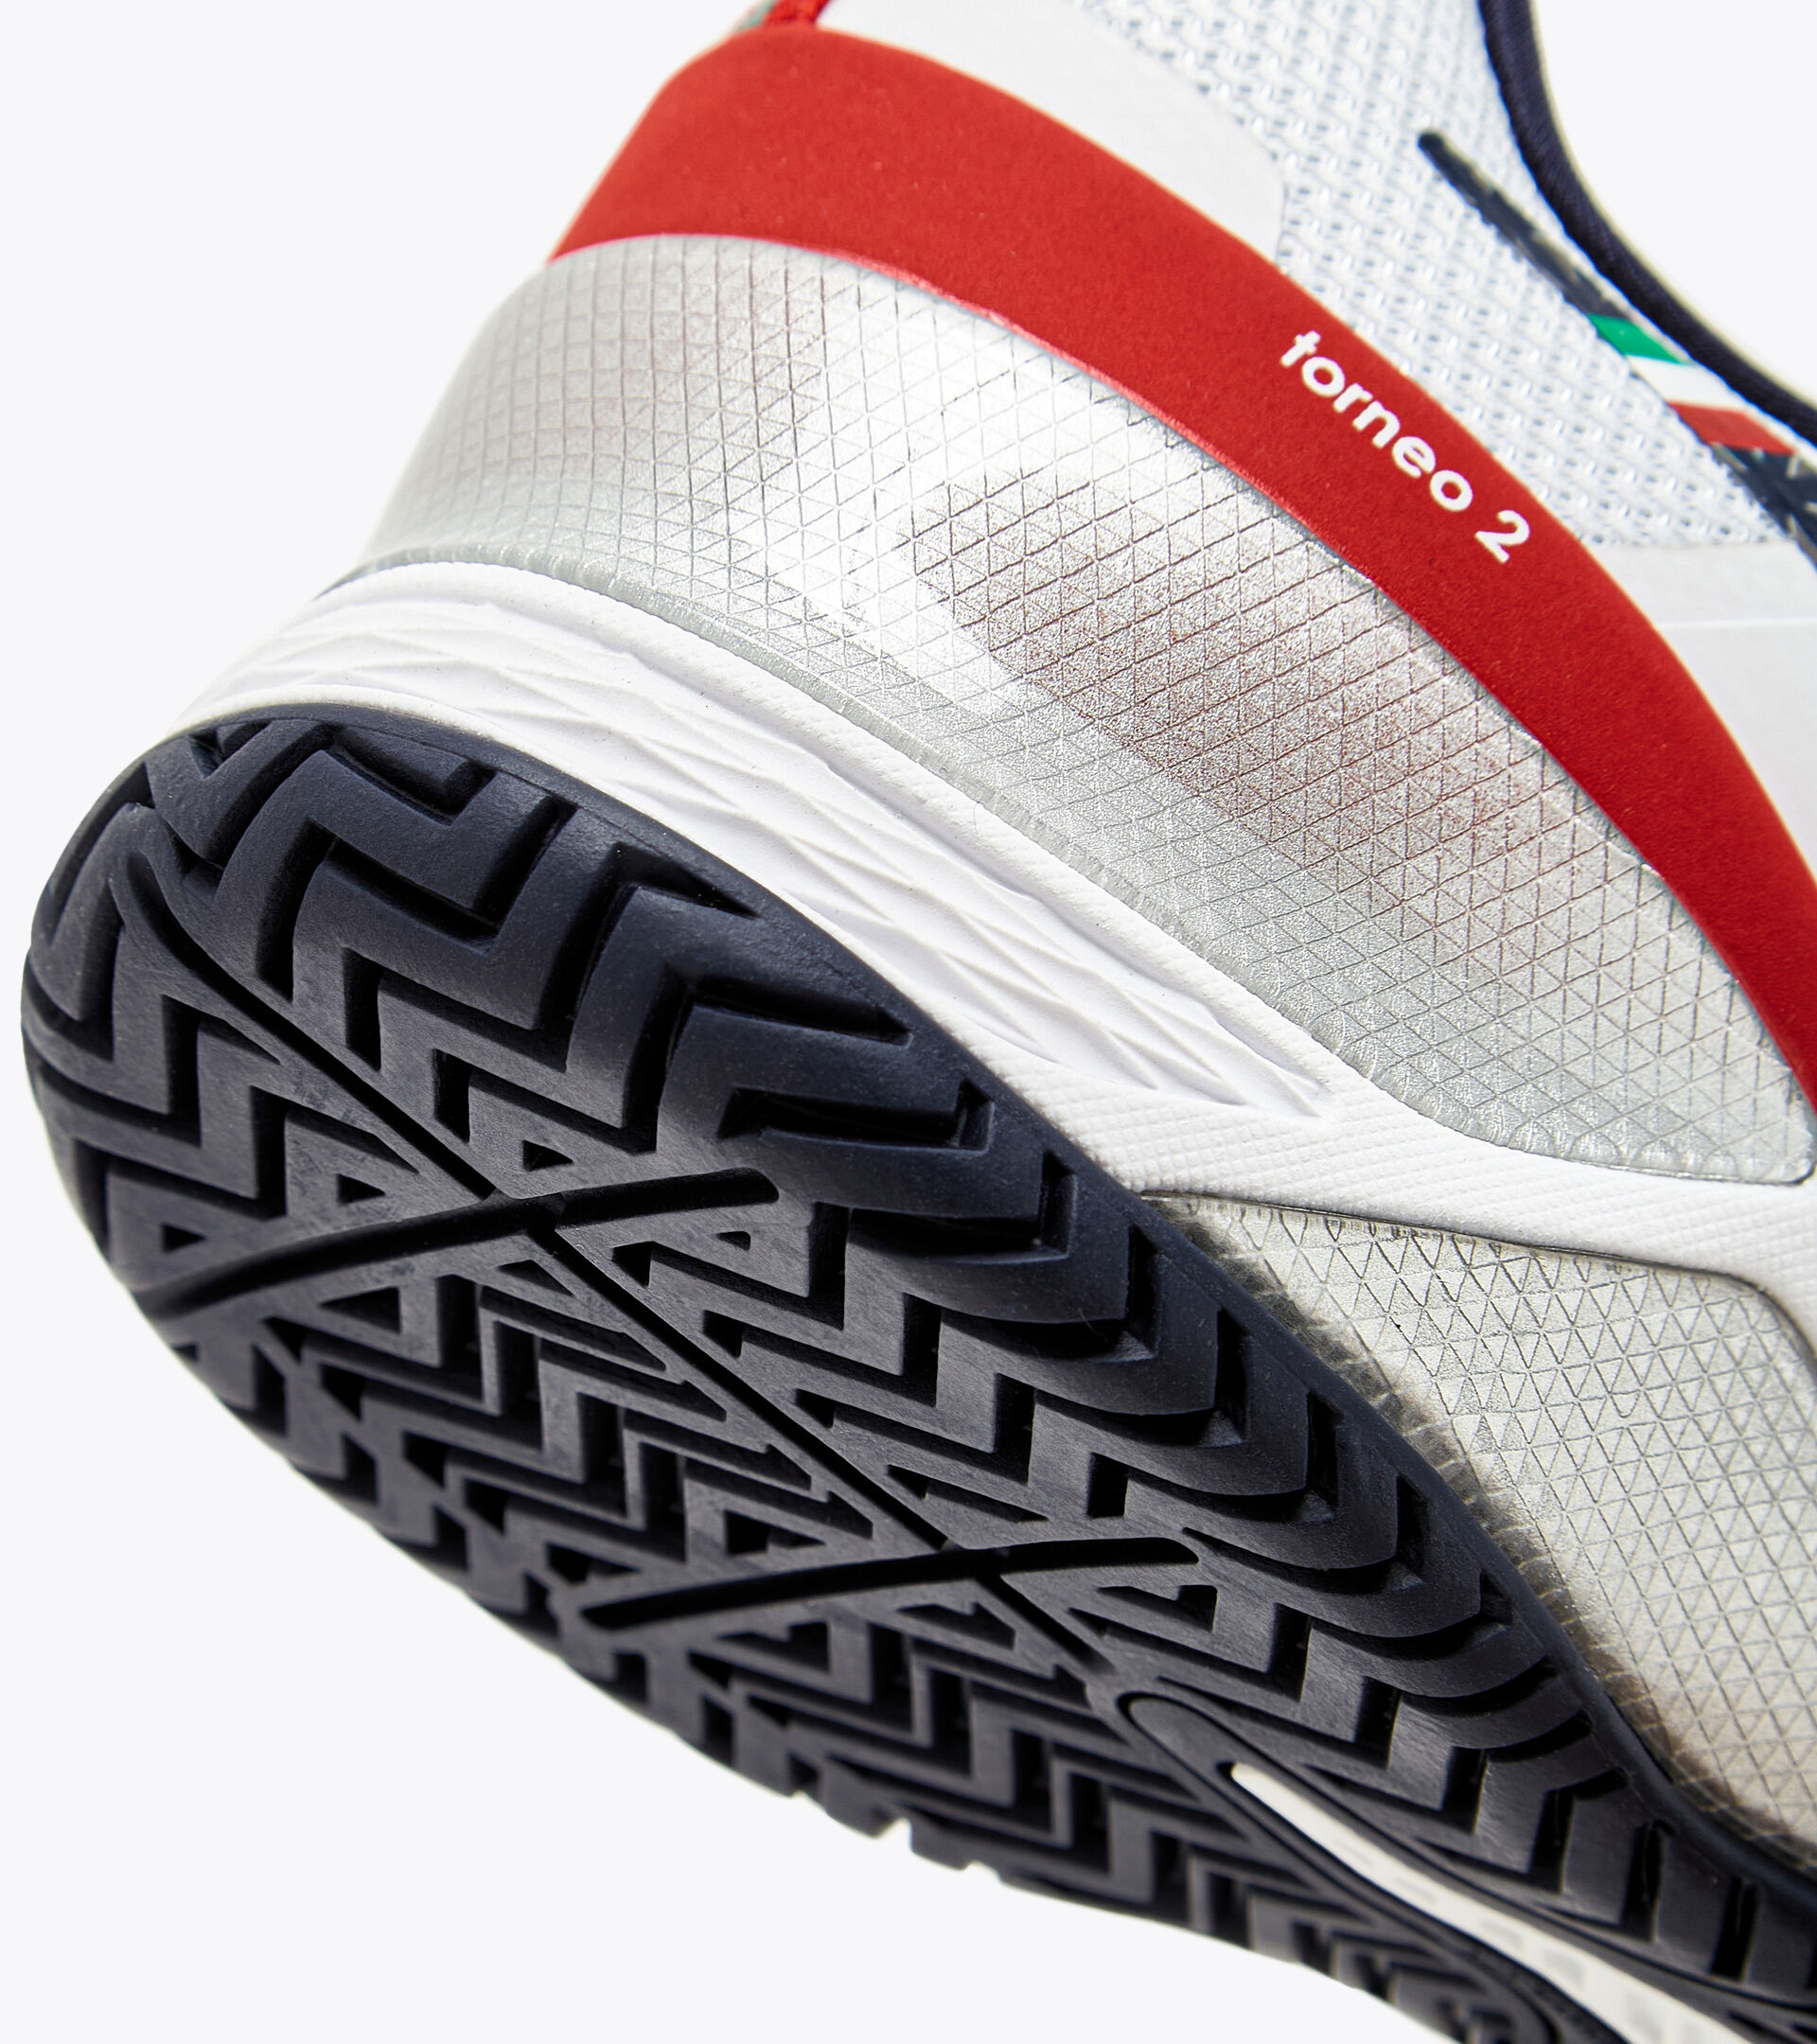 Tennis shoes for hard surfaces or clay - Men BLUSHIELD TORNEO 2 AG BLCO/LIRIO NEGRO/ROJO INTENSO - Diadora